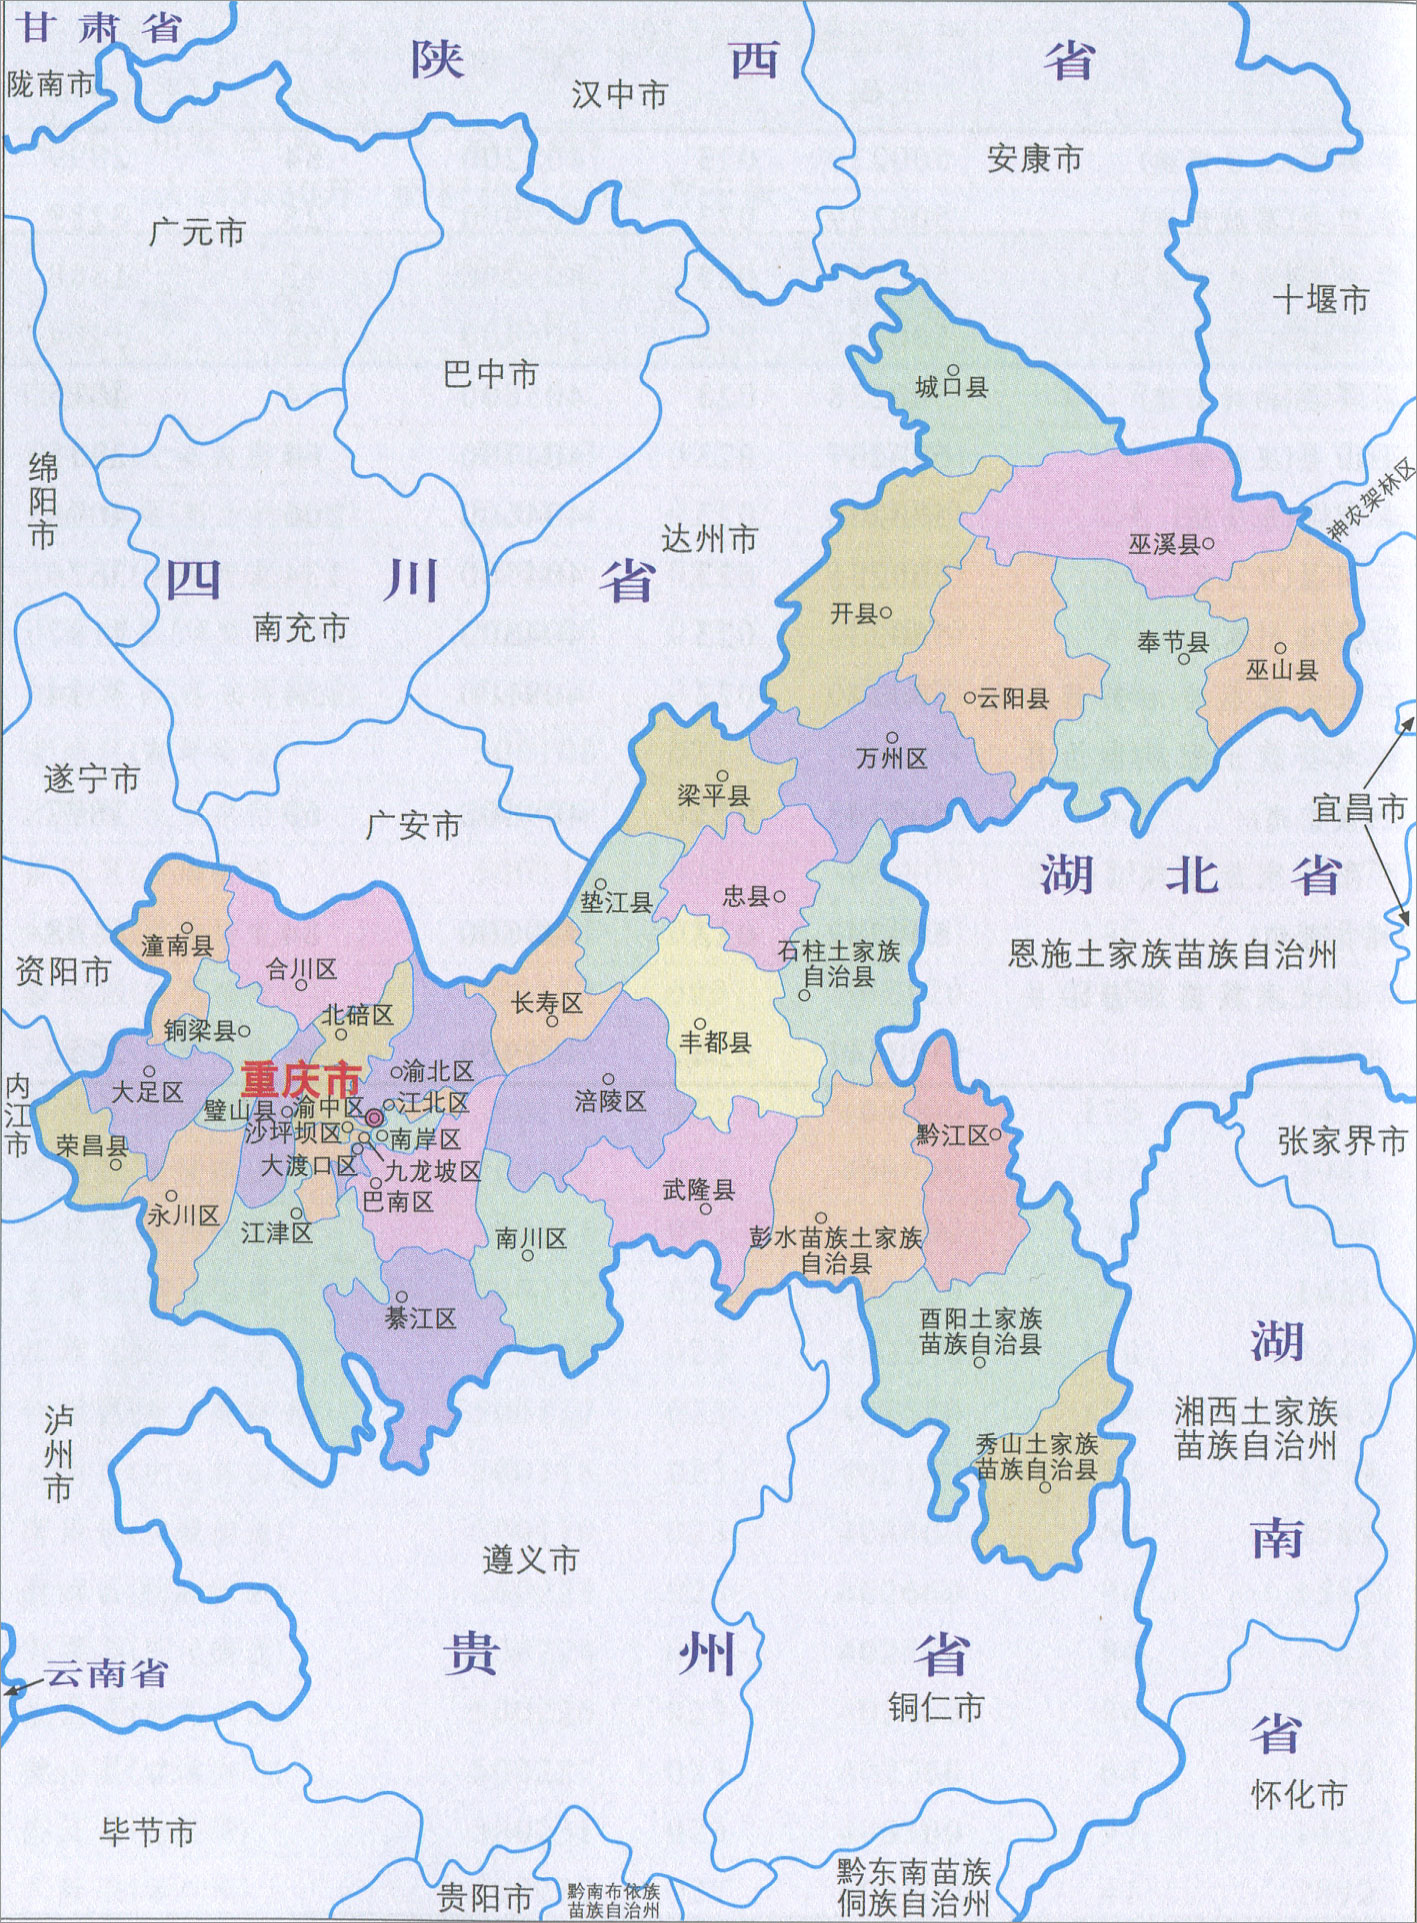 重庆行政区划简图_行政简图地图库_地图窝图片